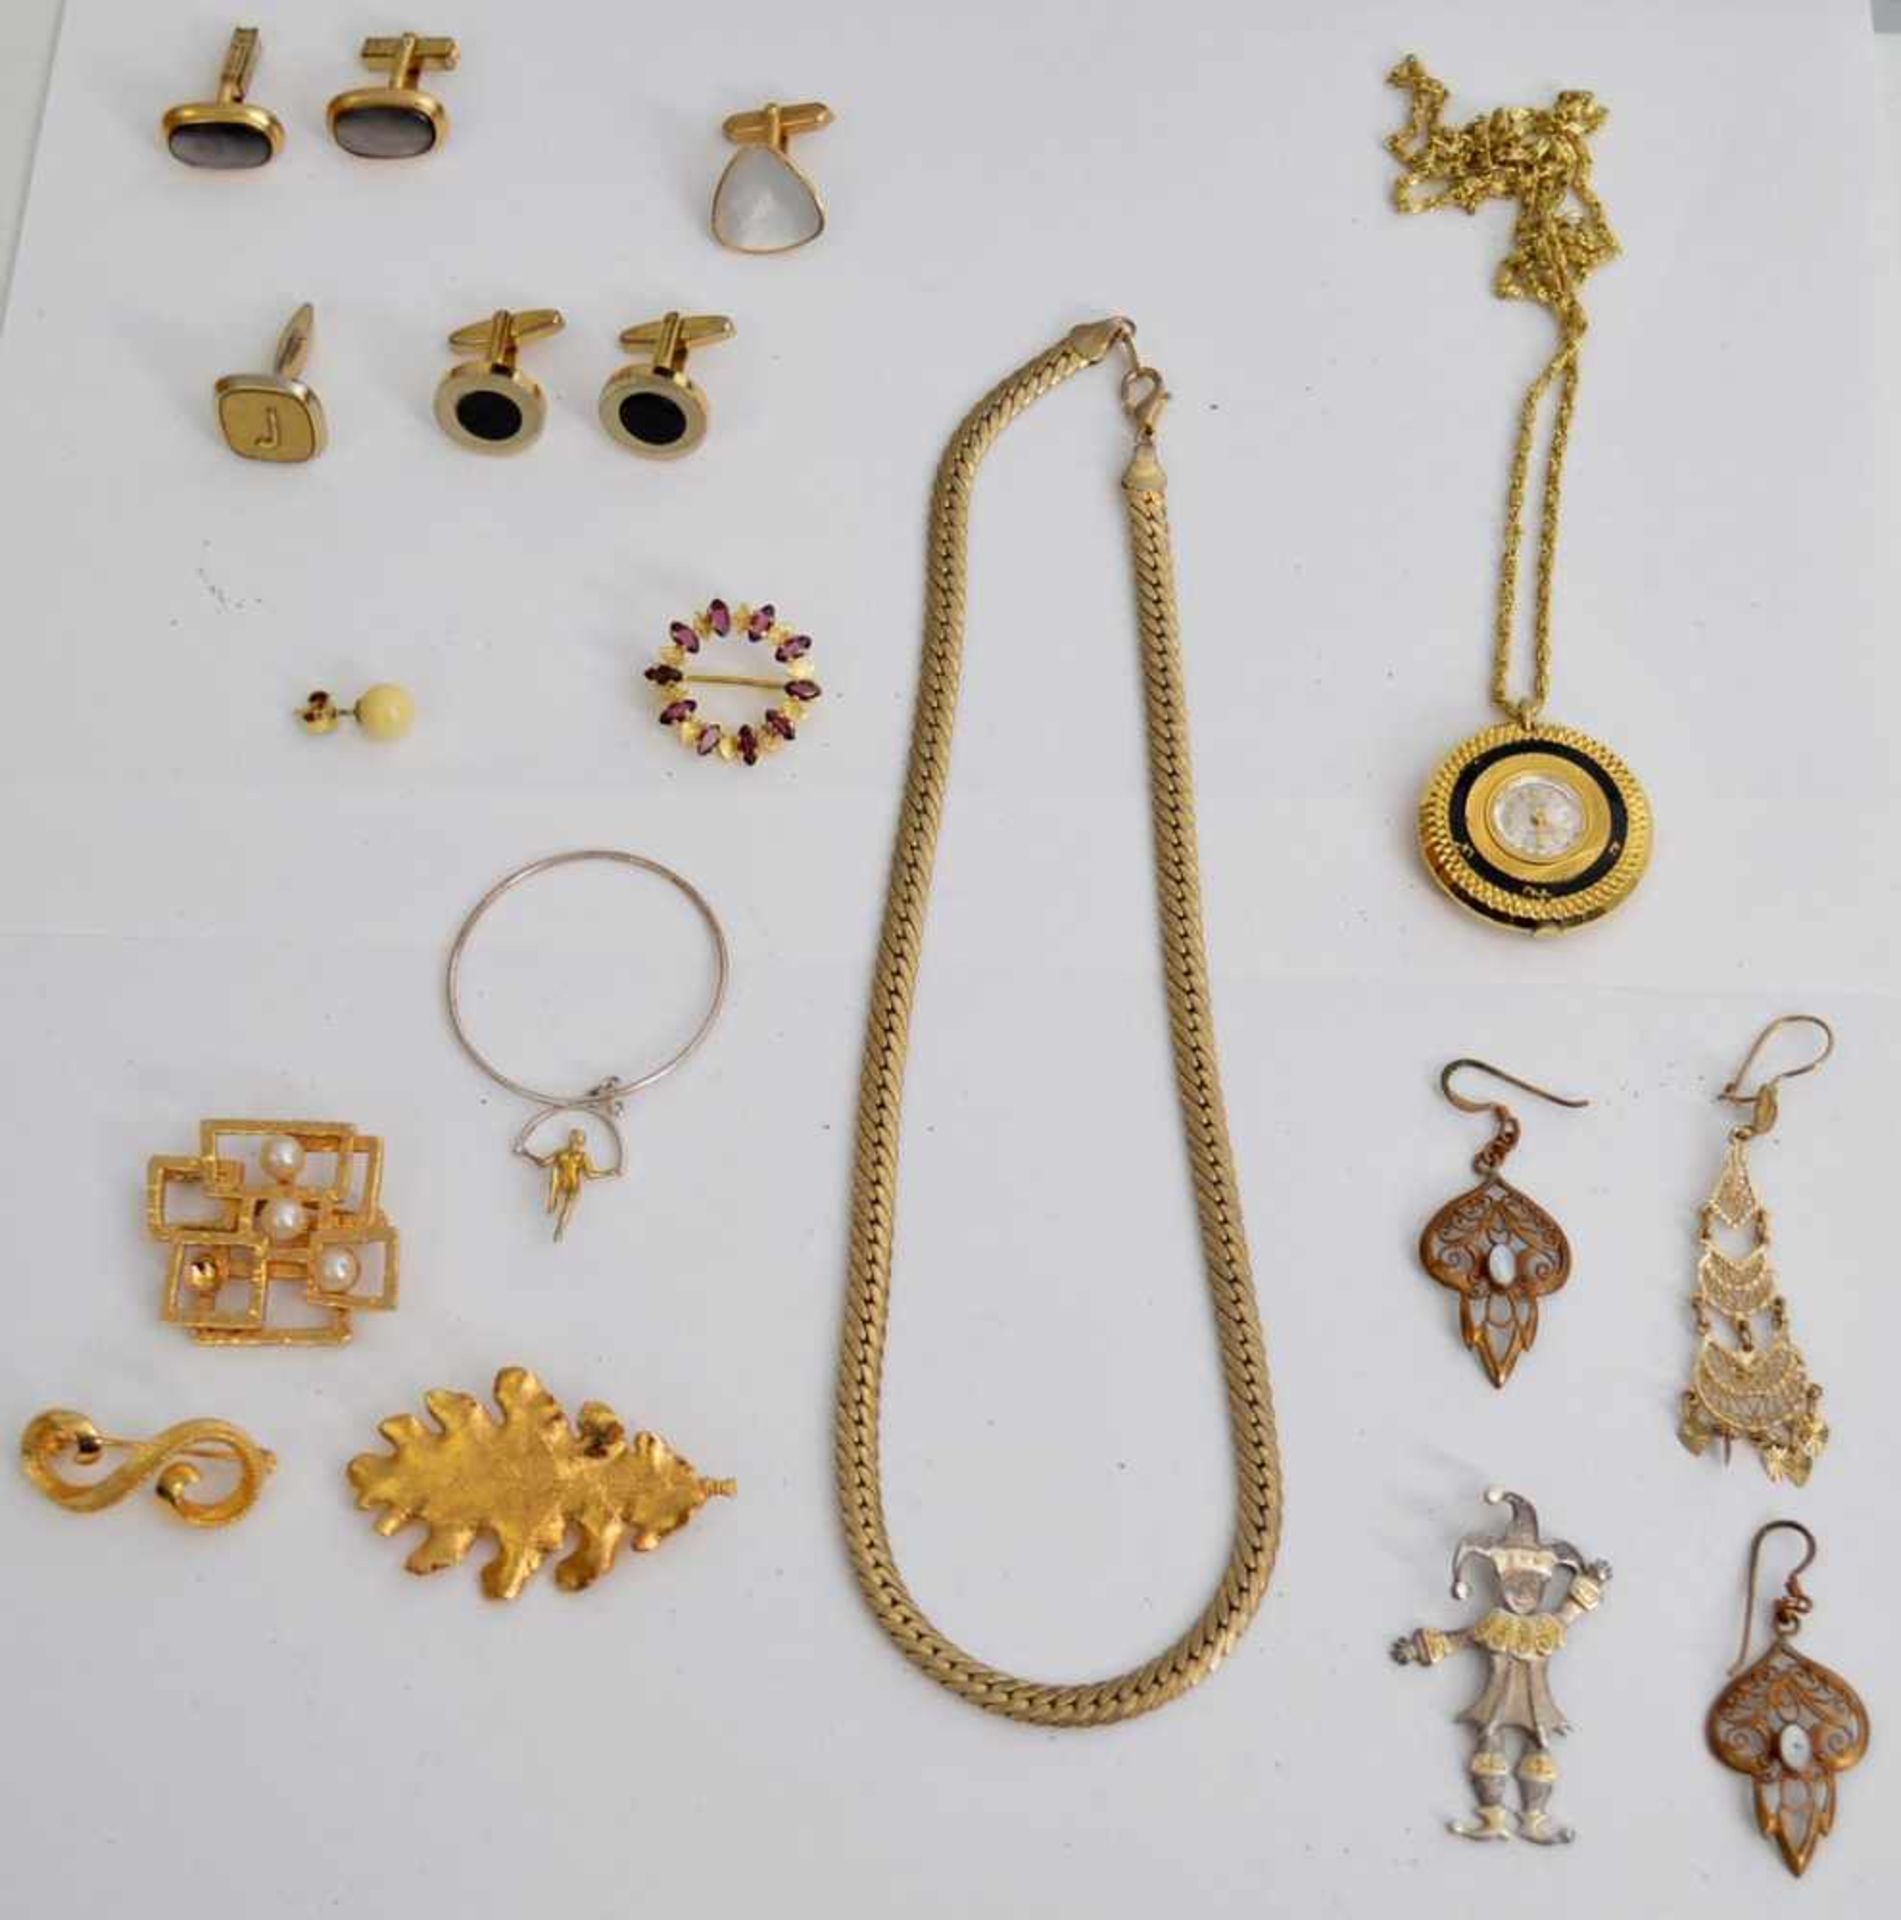 Konvolut SchmuckKetten, Uhren, Ringe etc., gold- und silberfarben, verschiedene Ausführungen